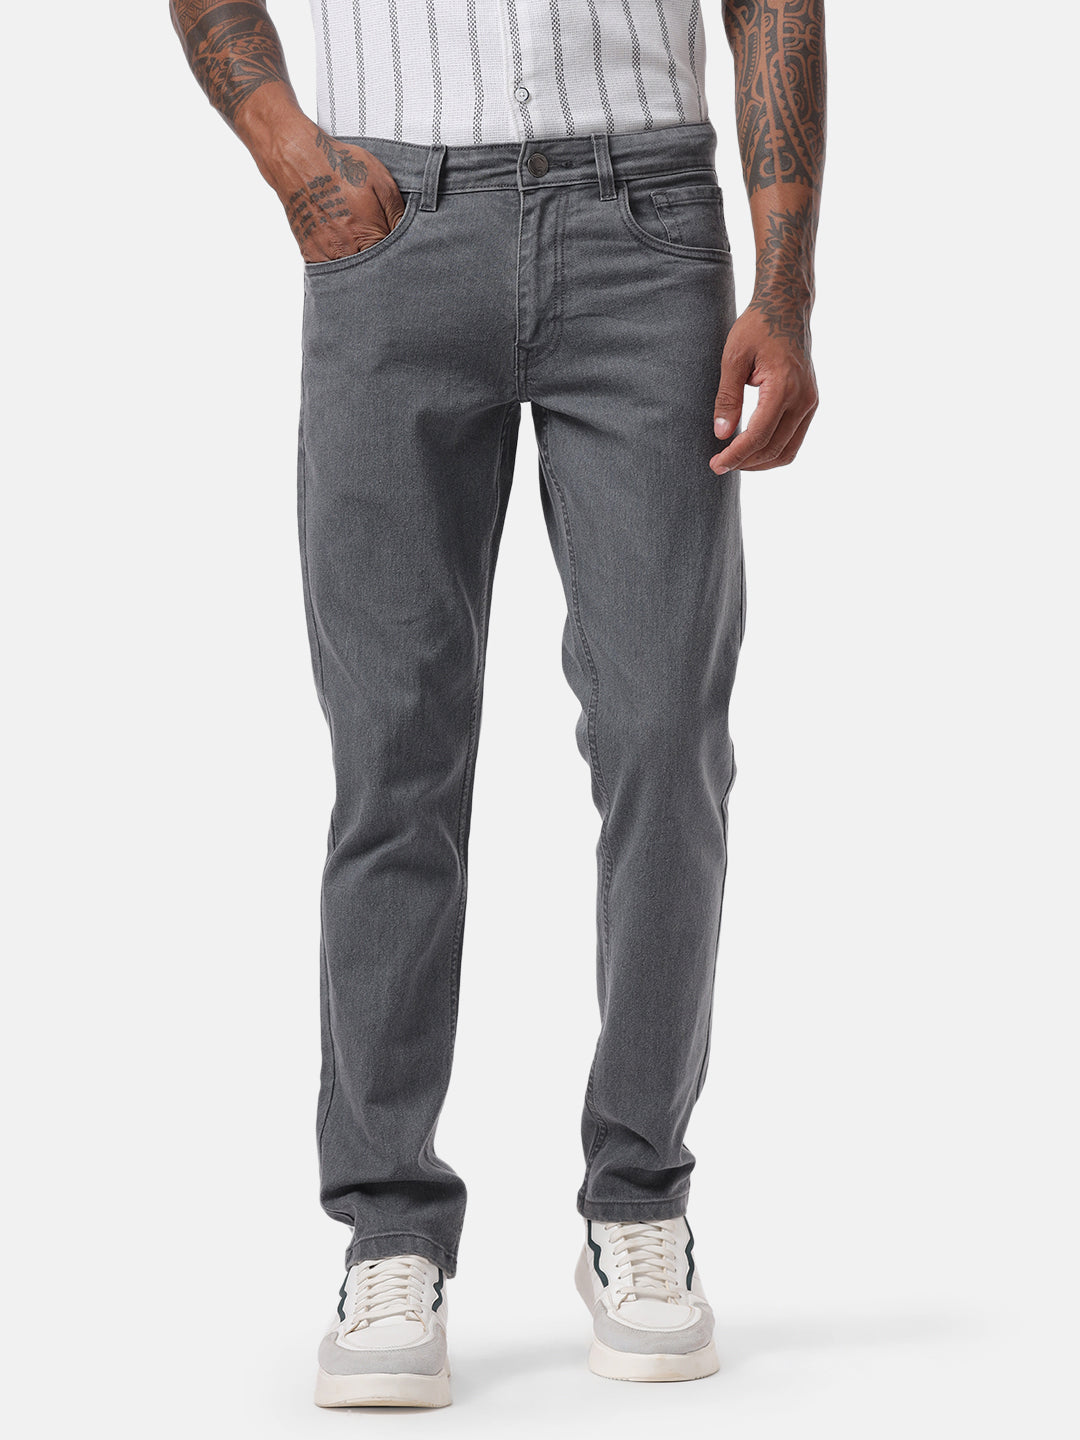 Basic Grey Five Pocket Jeans